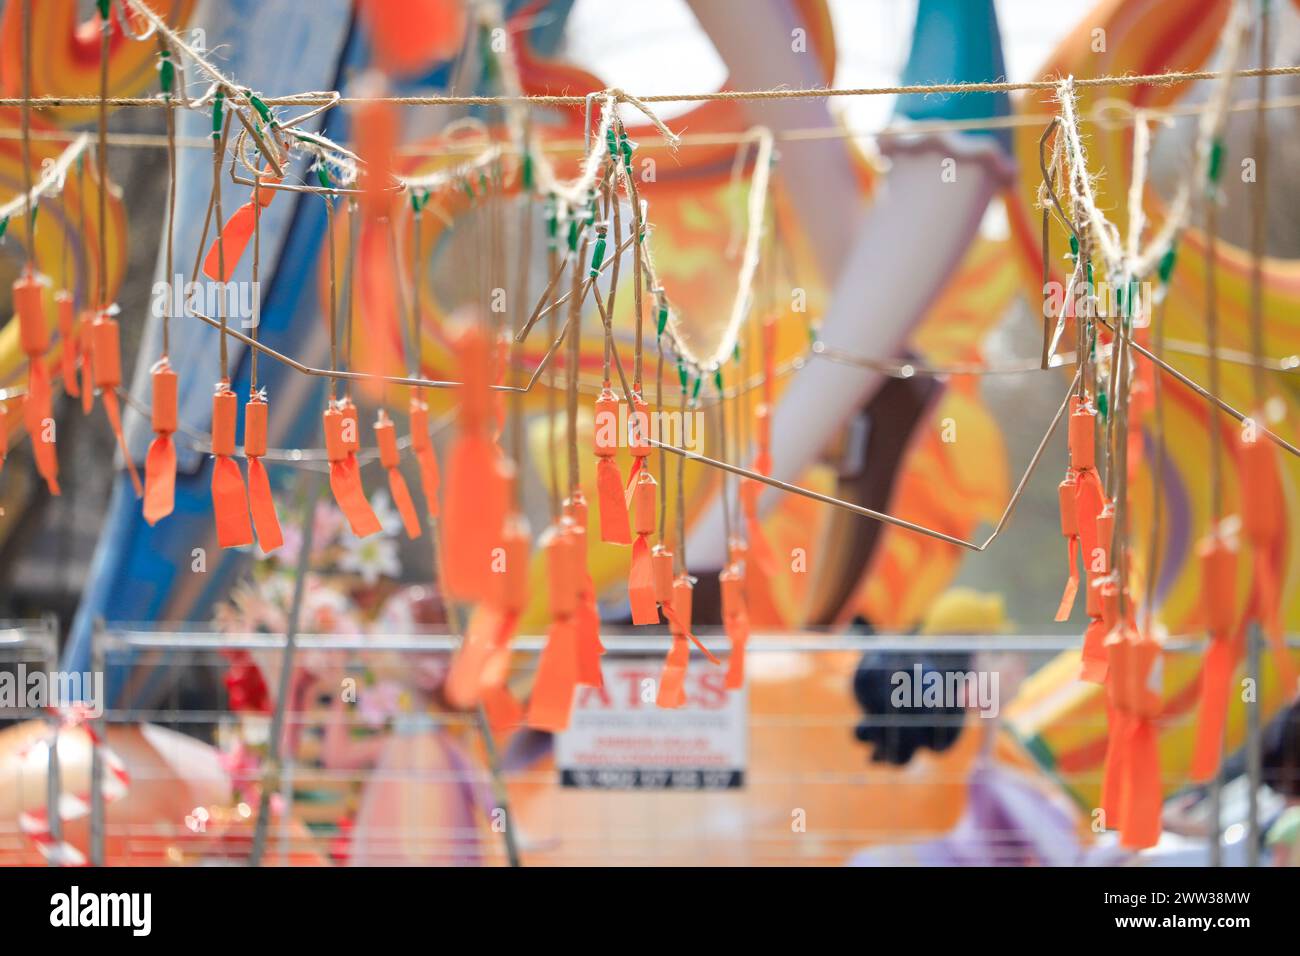 Hängende Feuerwerkskörper in verschiedenen Farben während der Mascleta, einer Tradition der Stadt Valencia. Spanien Stockfoto